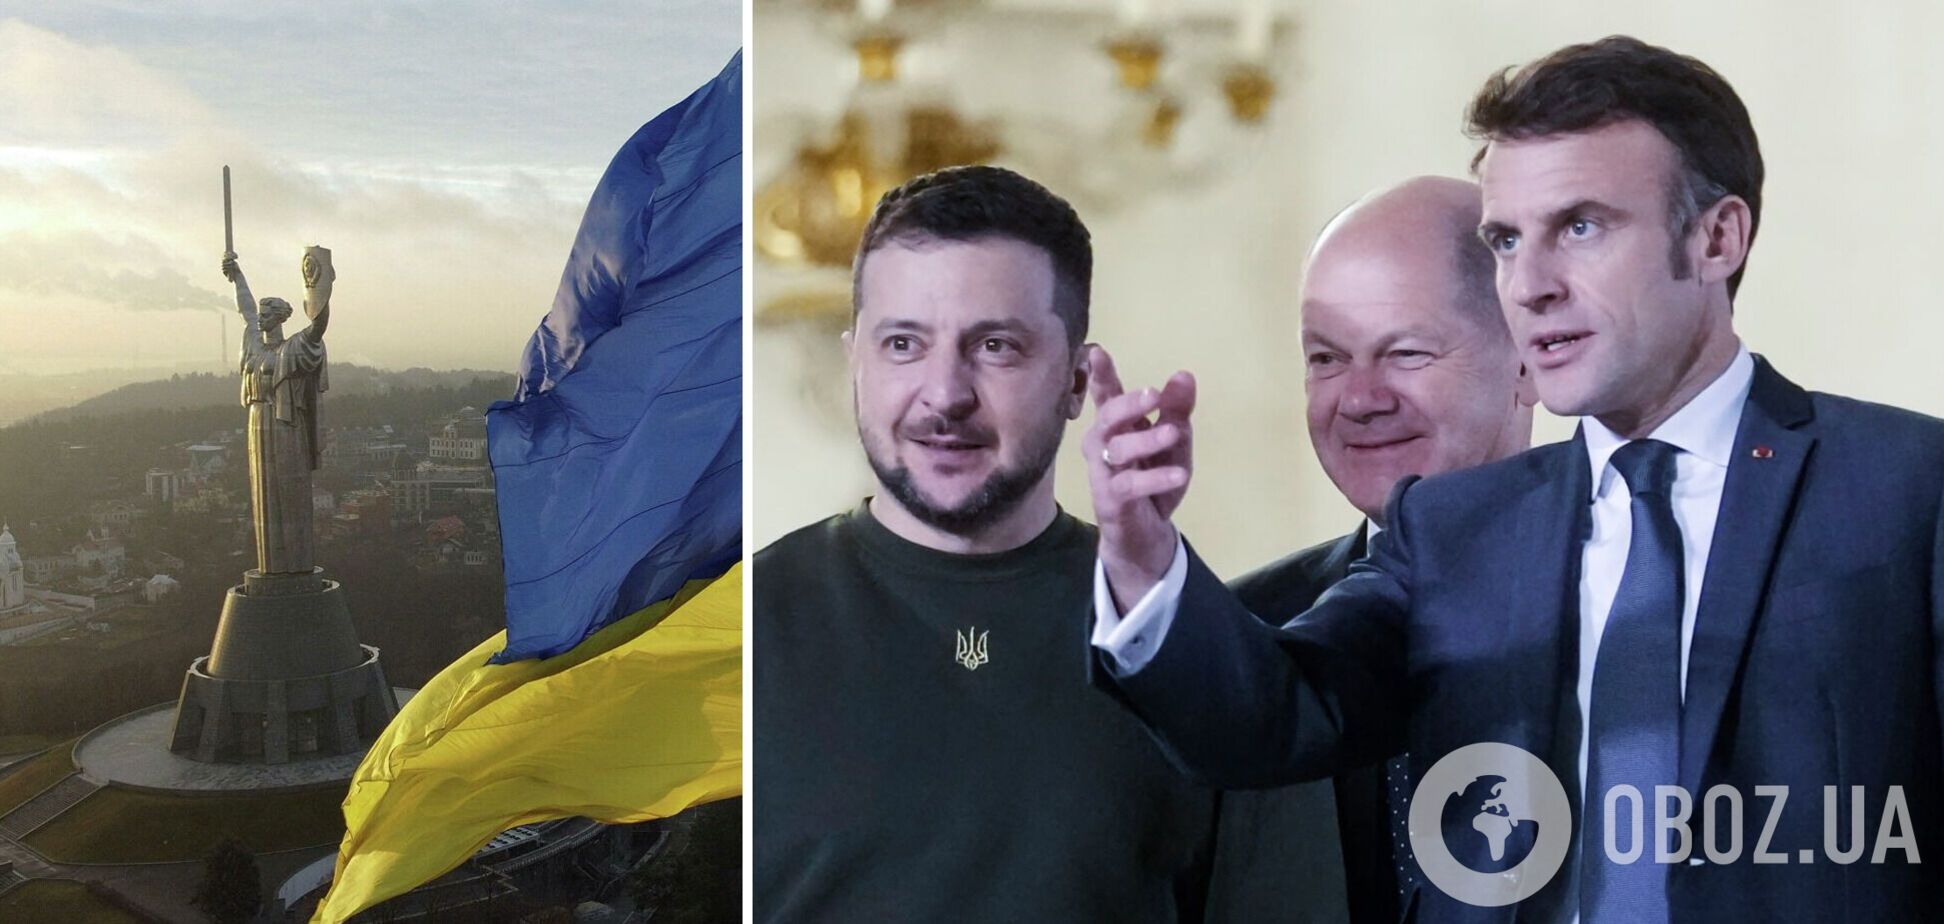 Макрон: Франция поможет Украине в достижении мира и создании безопасного пространства для всех